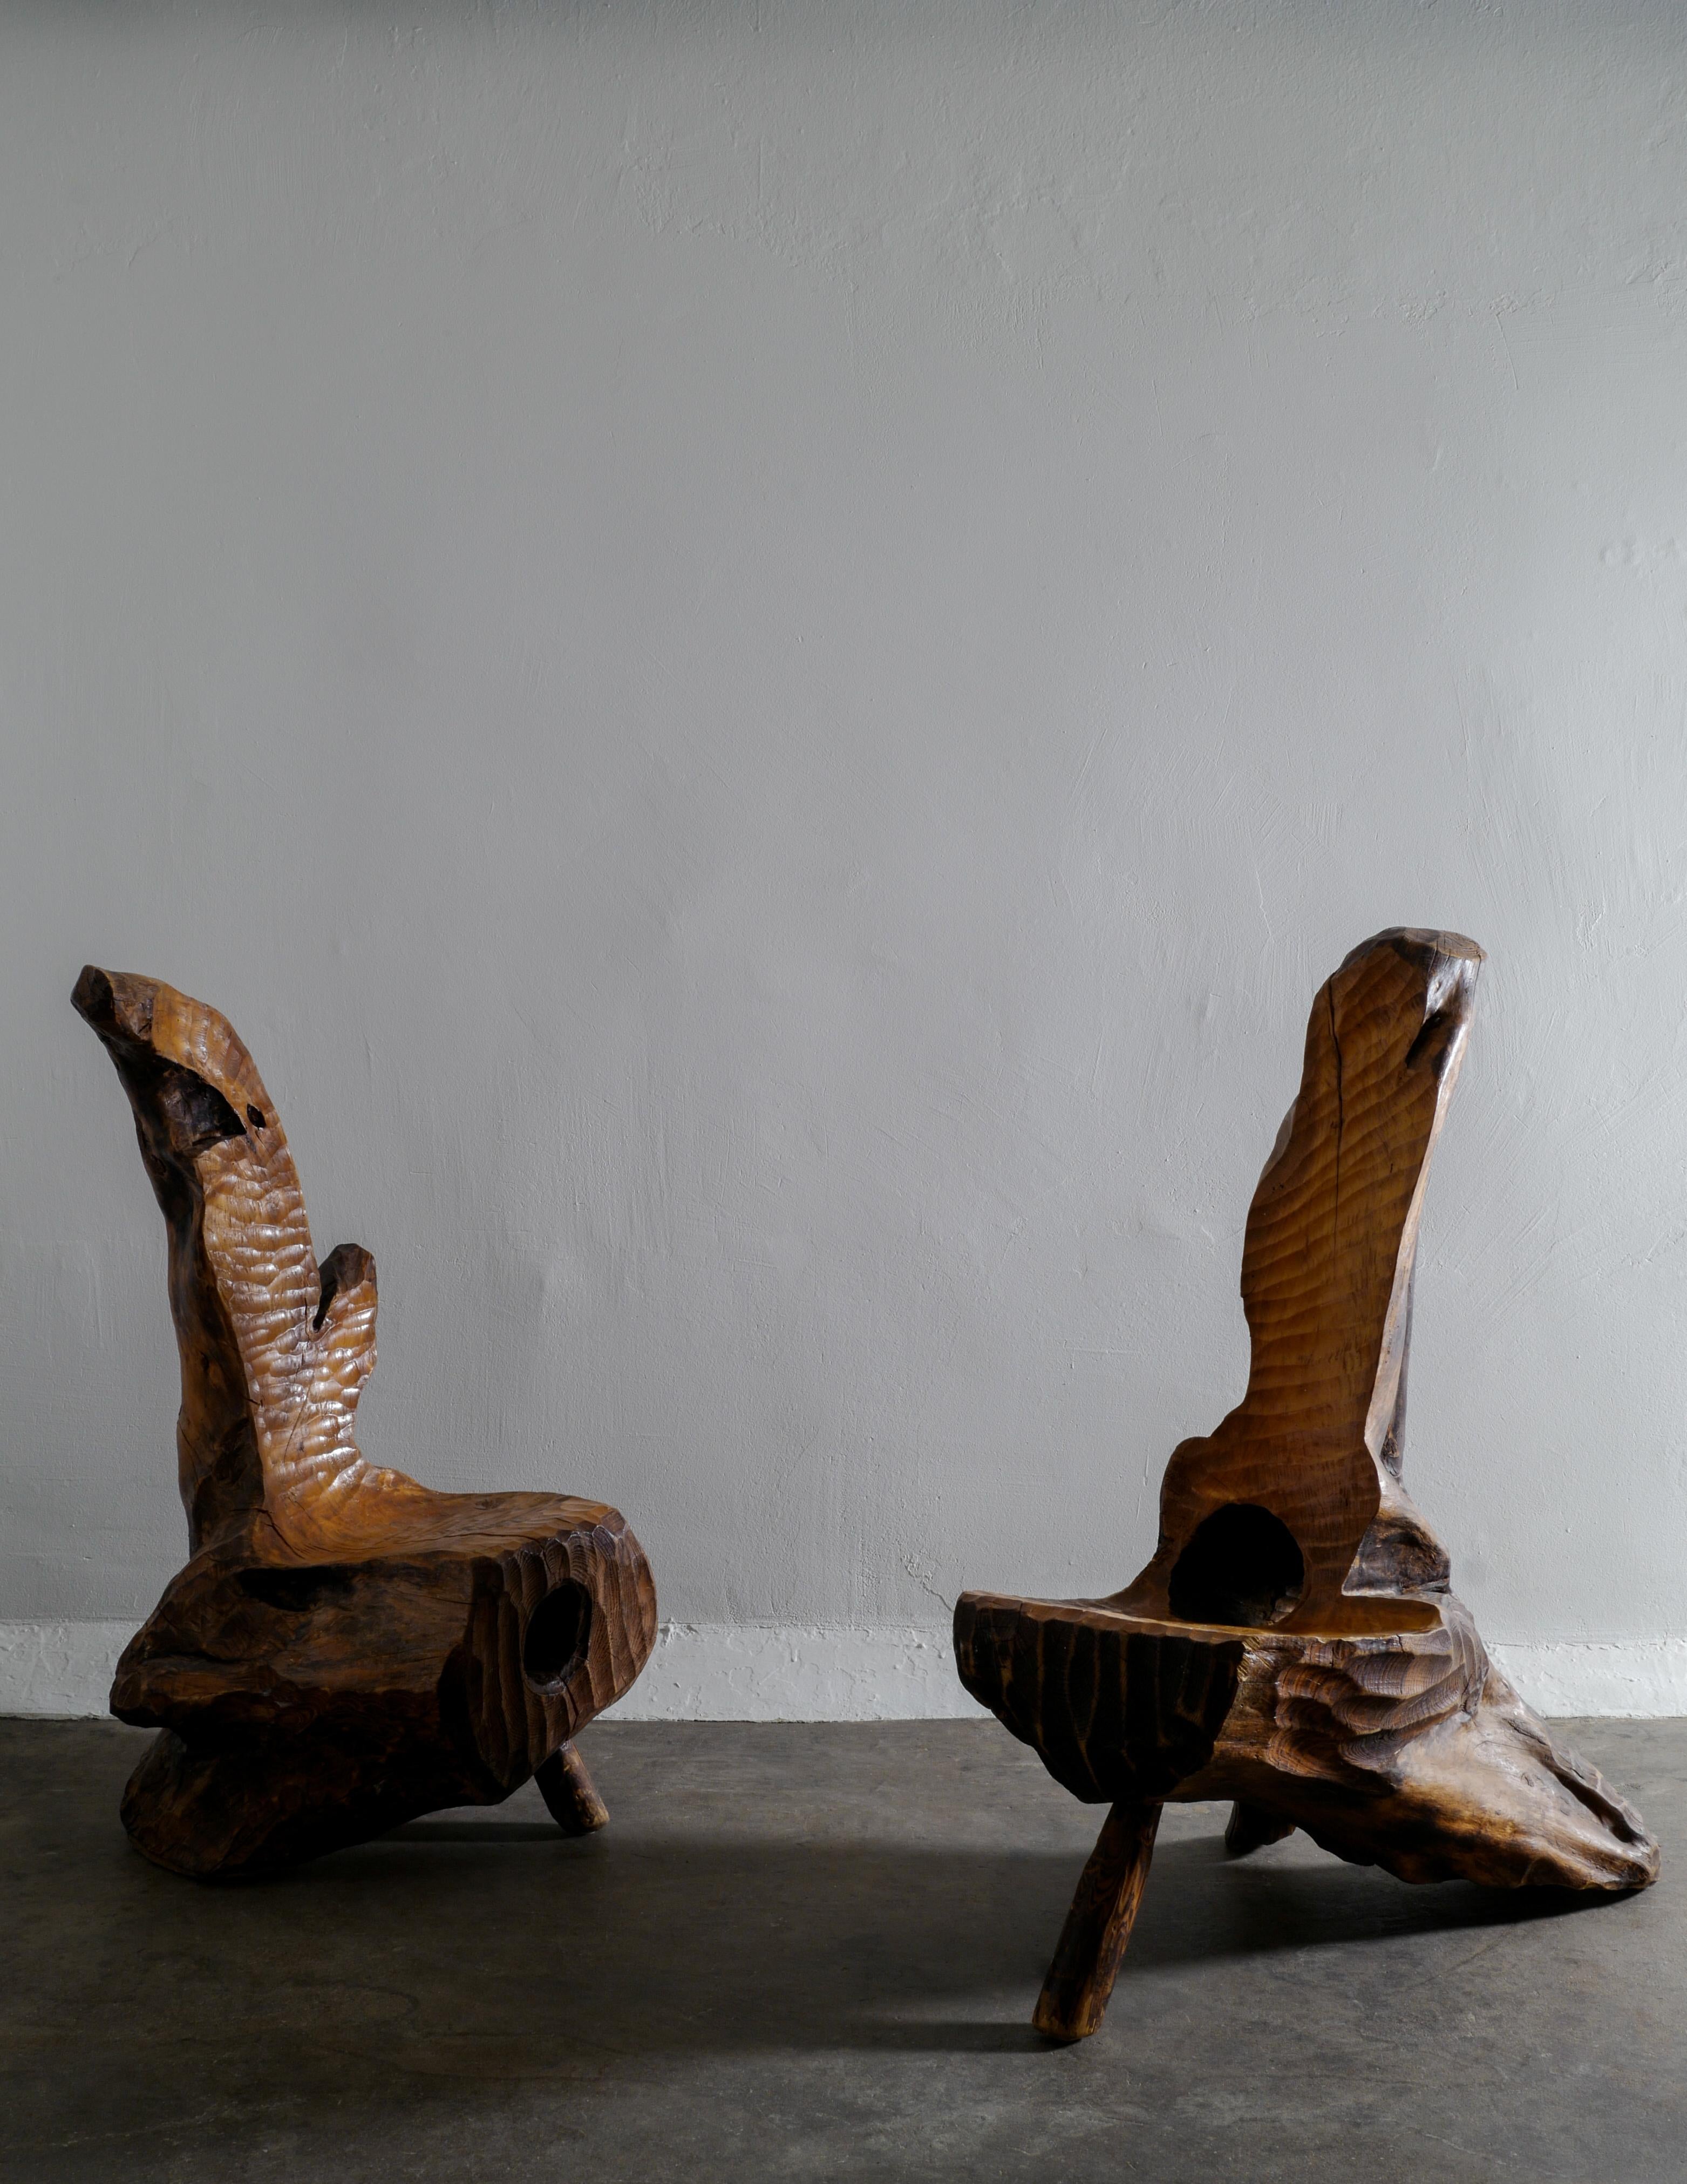 Suédois Chaise suédoise en bois sculpturale et artisanale faite à la main dans un style primitif et Wabi Sabi